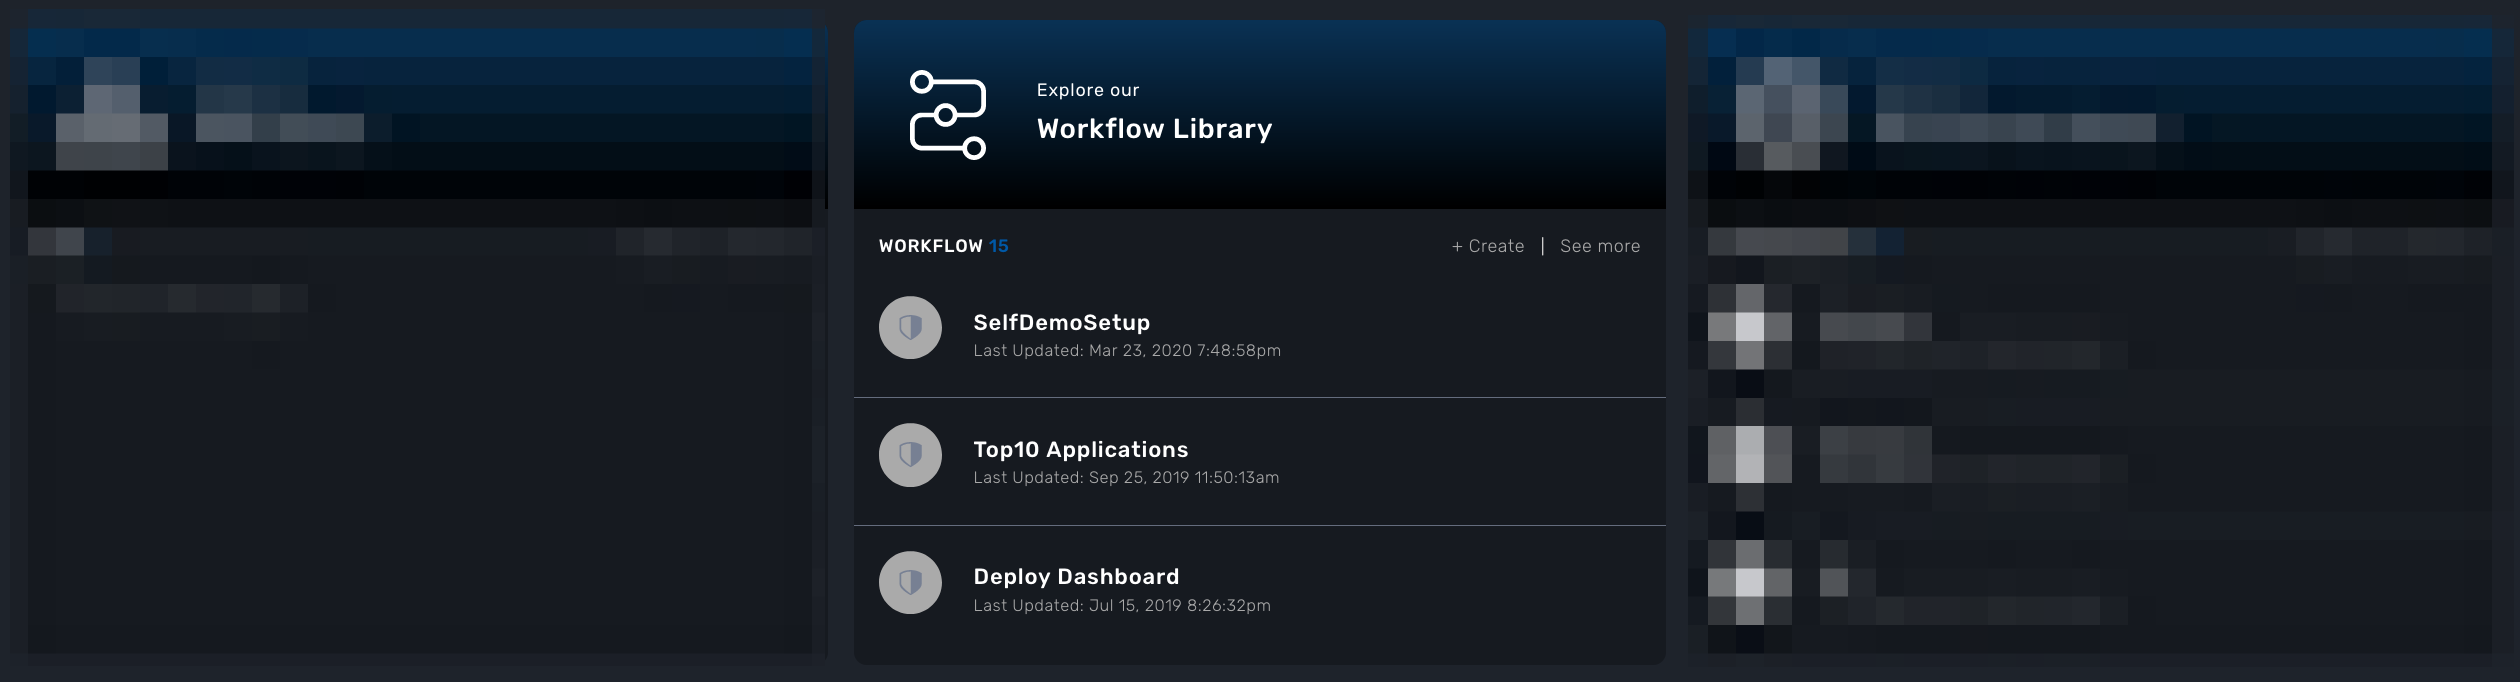 developer dashboard workflow